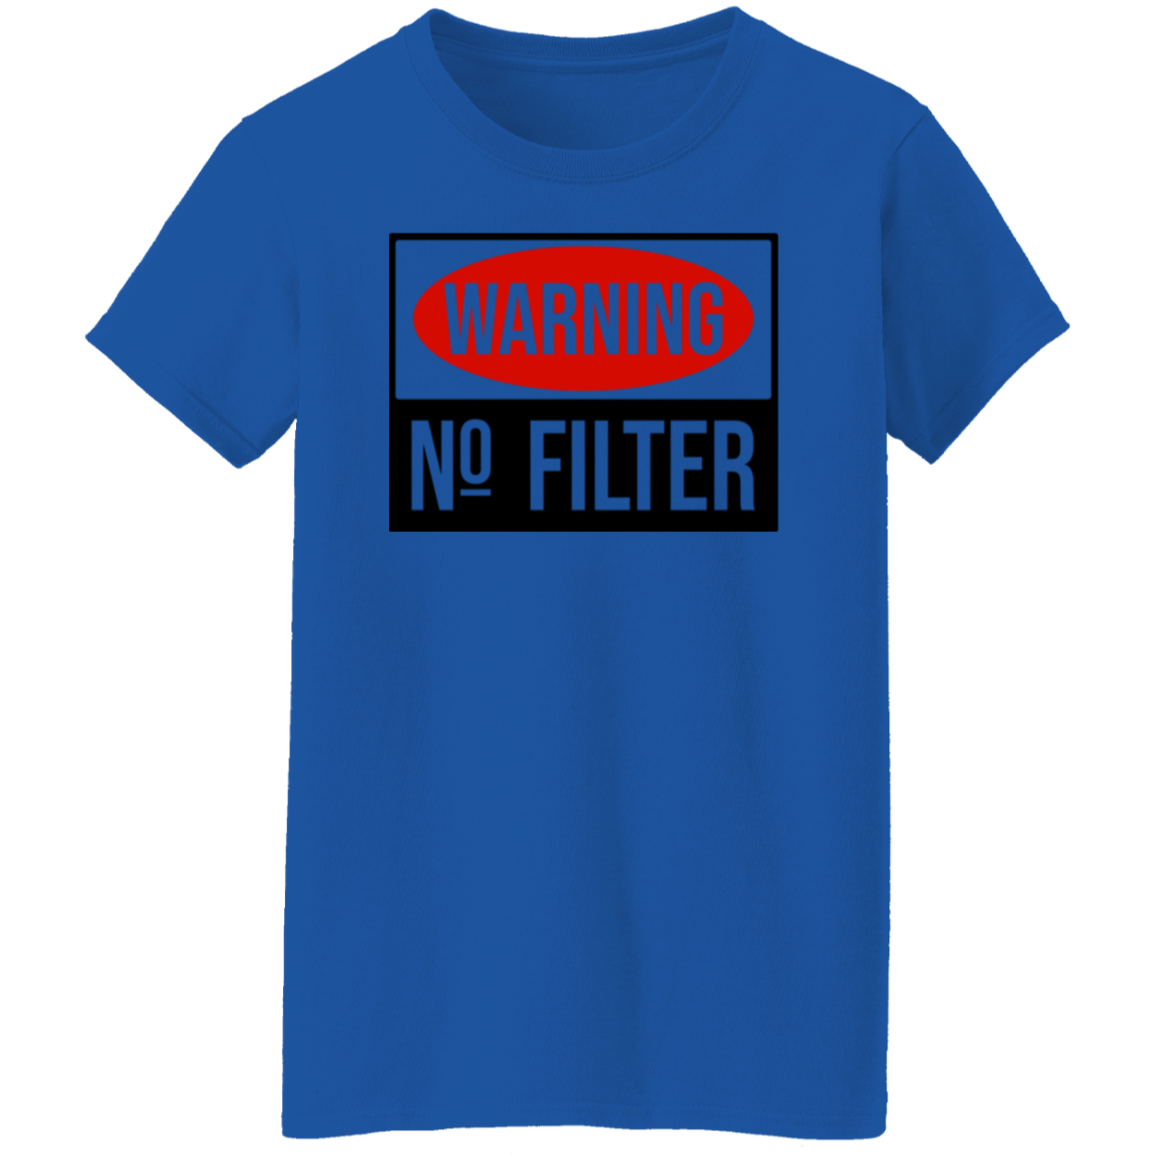 Warning, No Filter T-Shirt